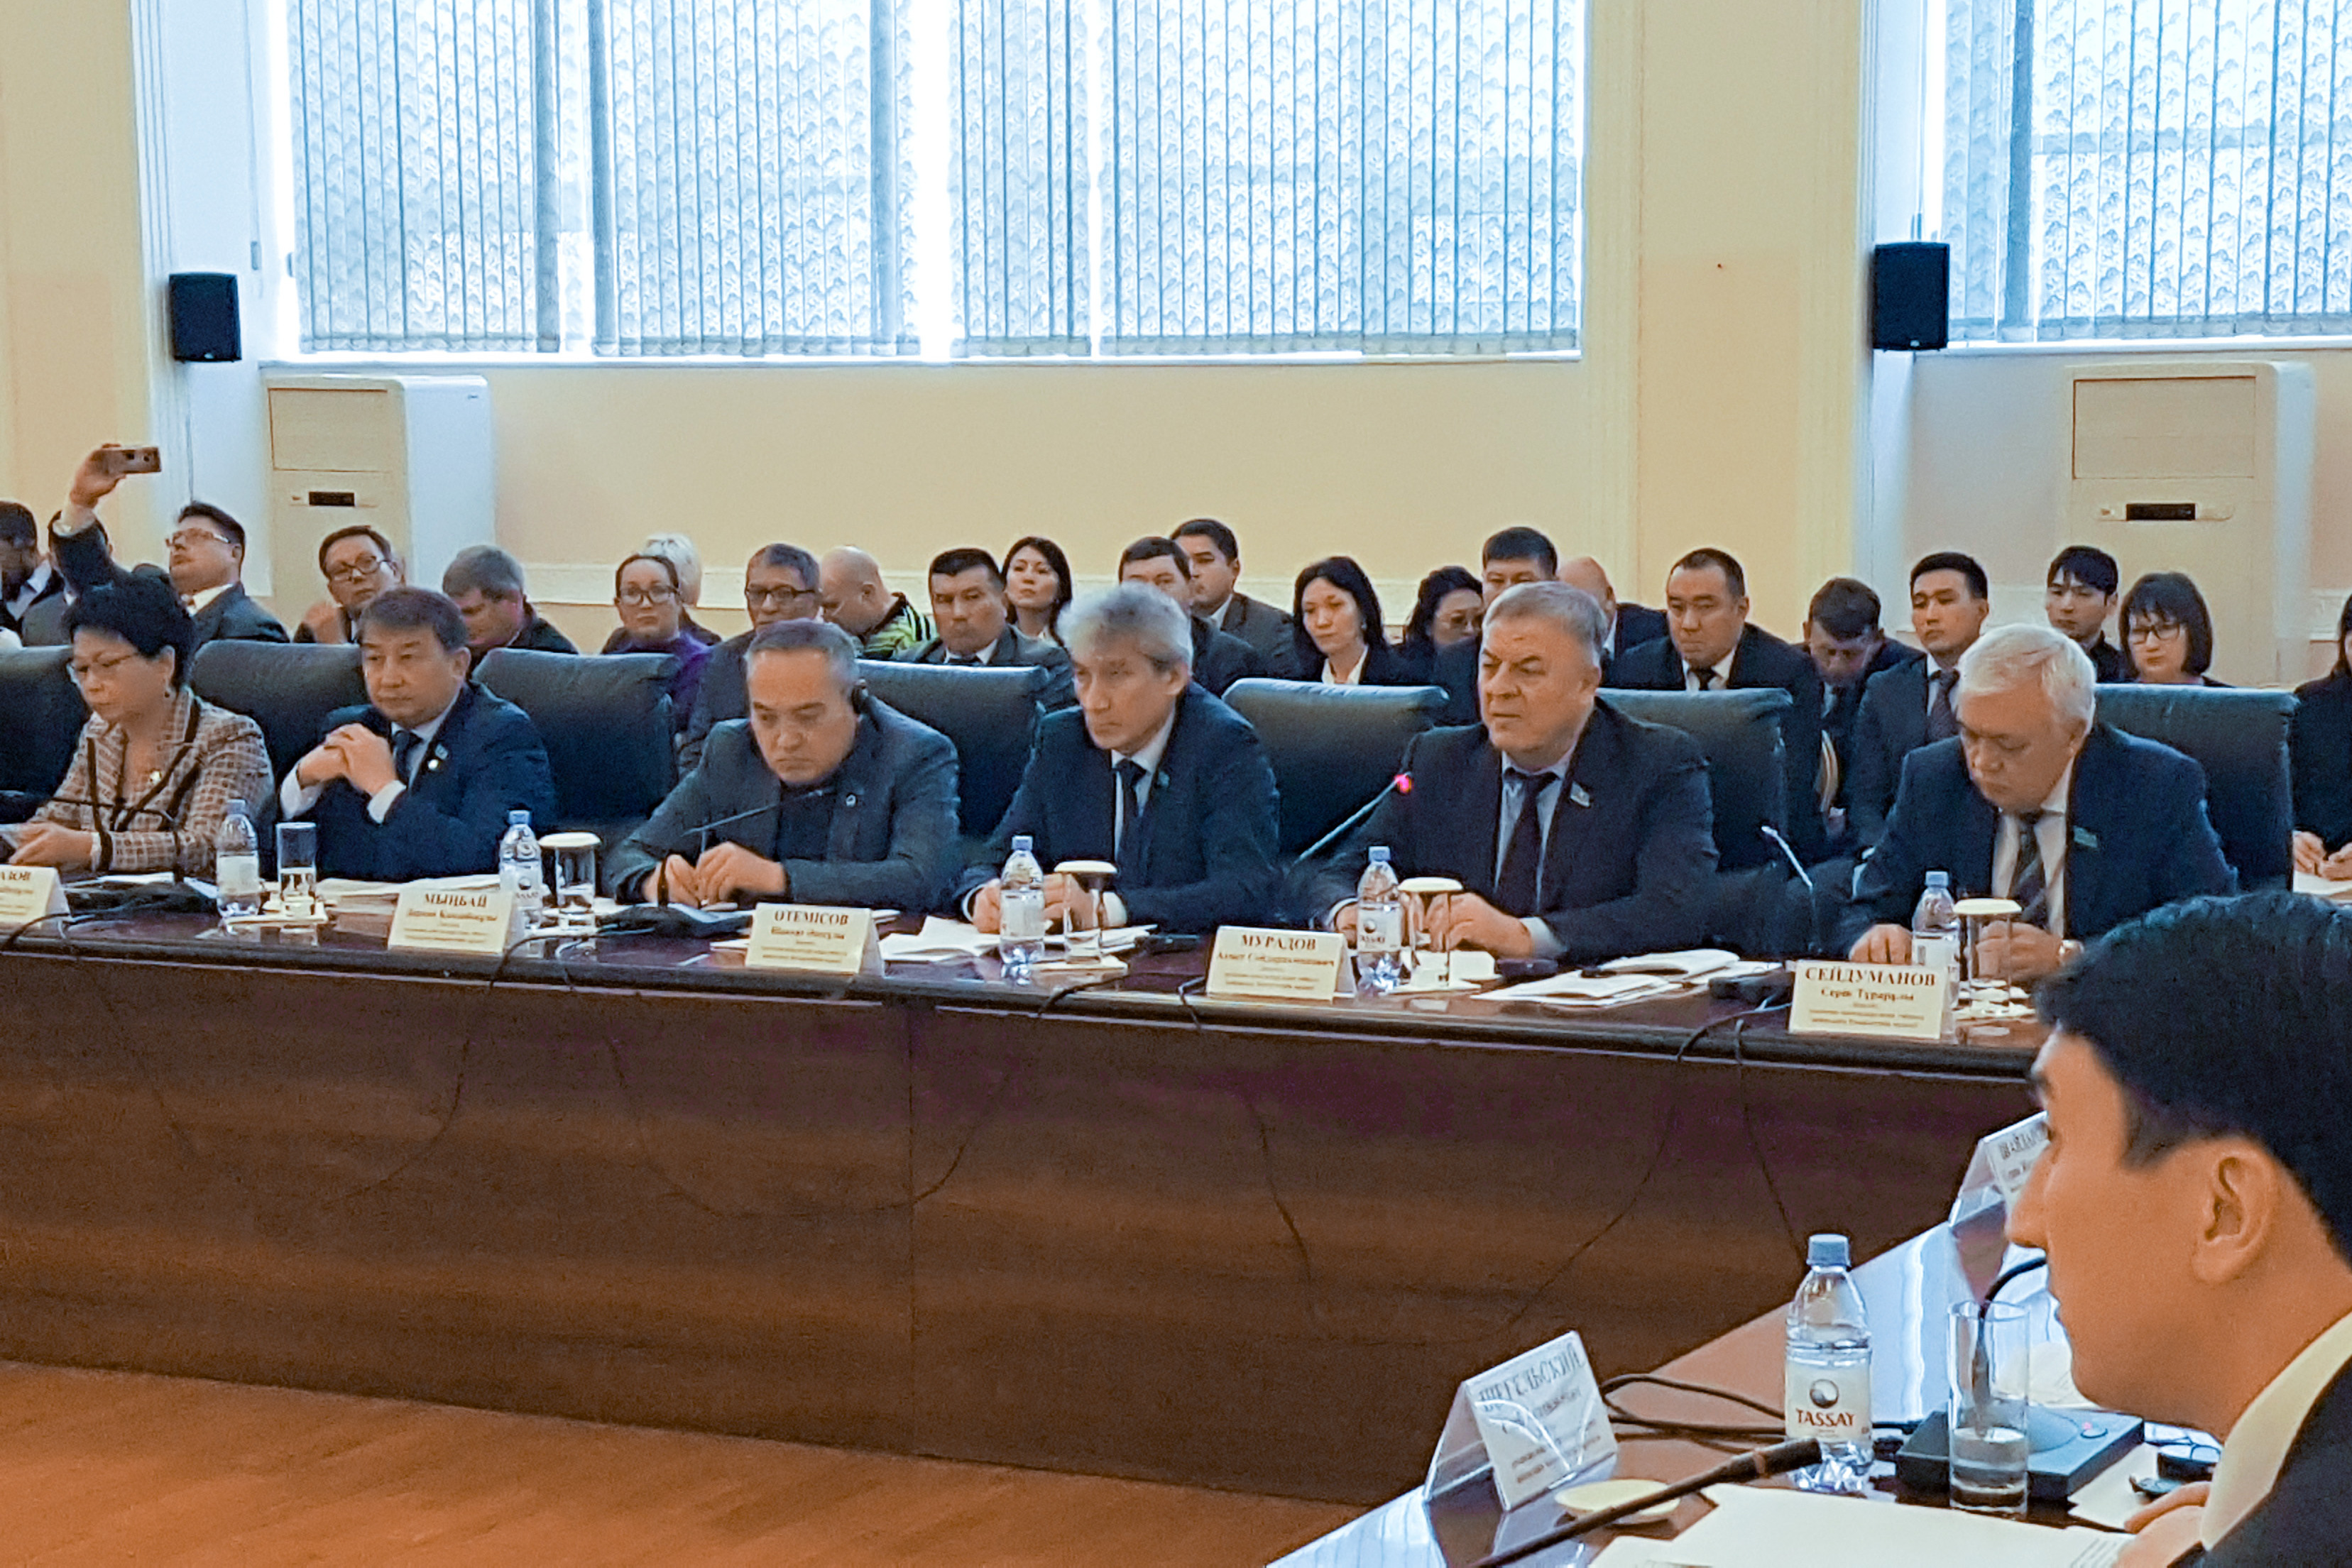 Принял участие на выездном расширенном заседании Комитета по вопросам экологии и природопользованию Мажилиса Парламента Республики Казахстан в г.Темиртау Карагандинской области.